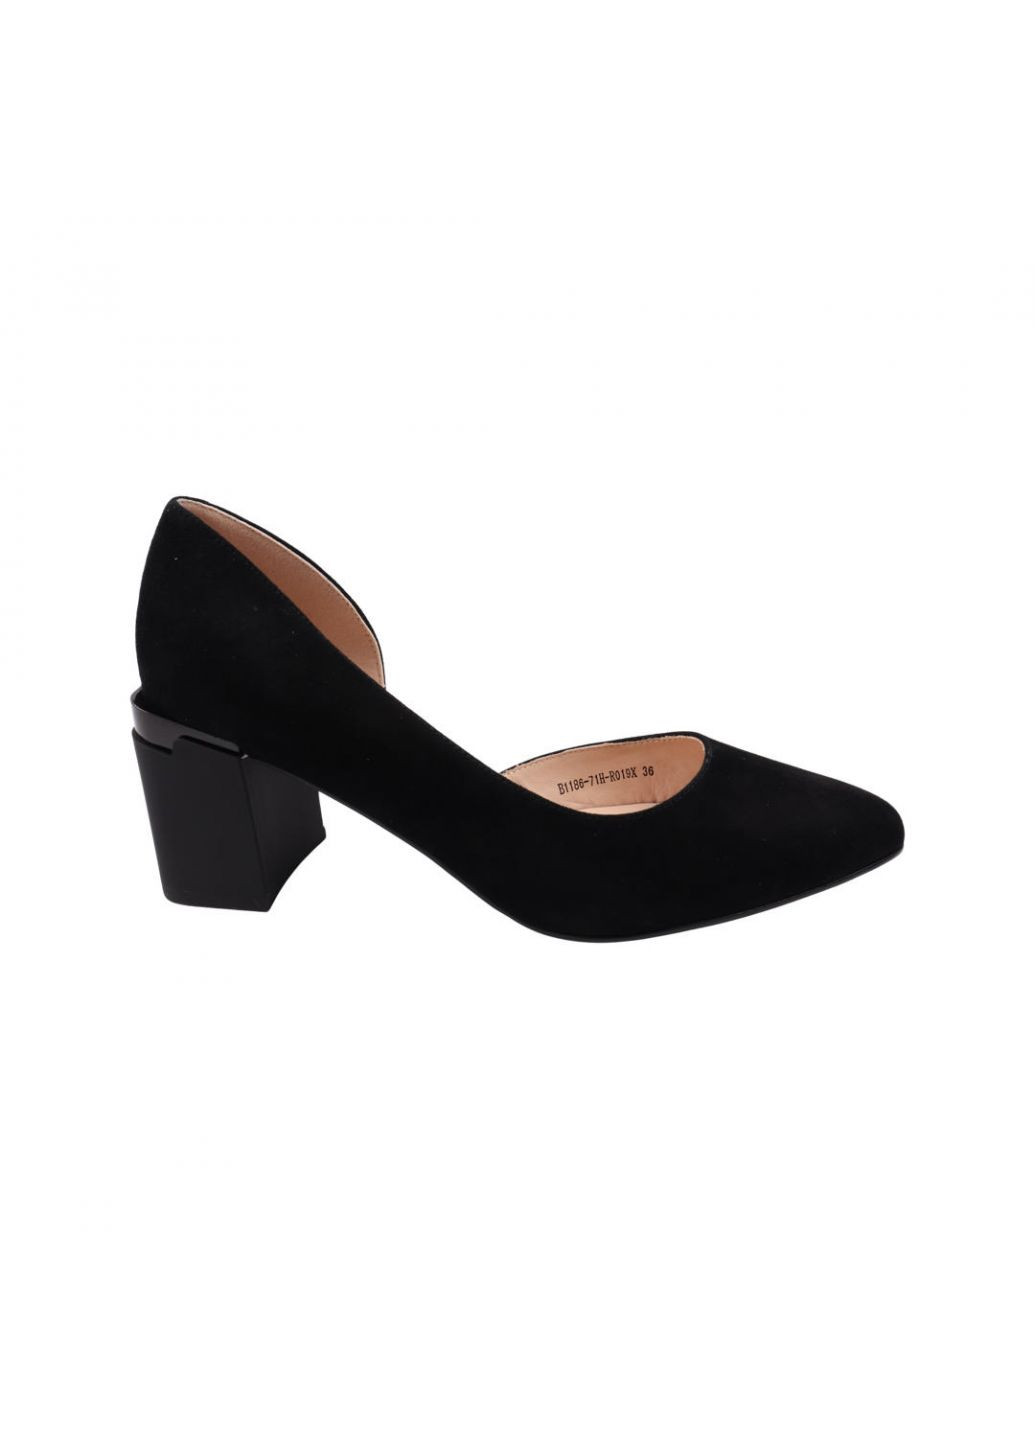 Туфлі жіночі чорні натуральна замша Geronea 988-22dtb (257440038)